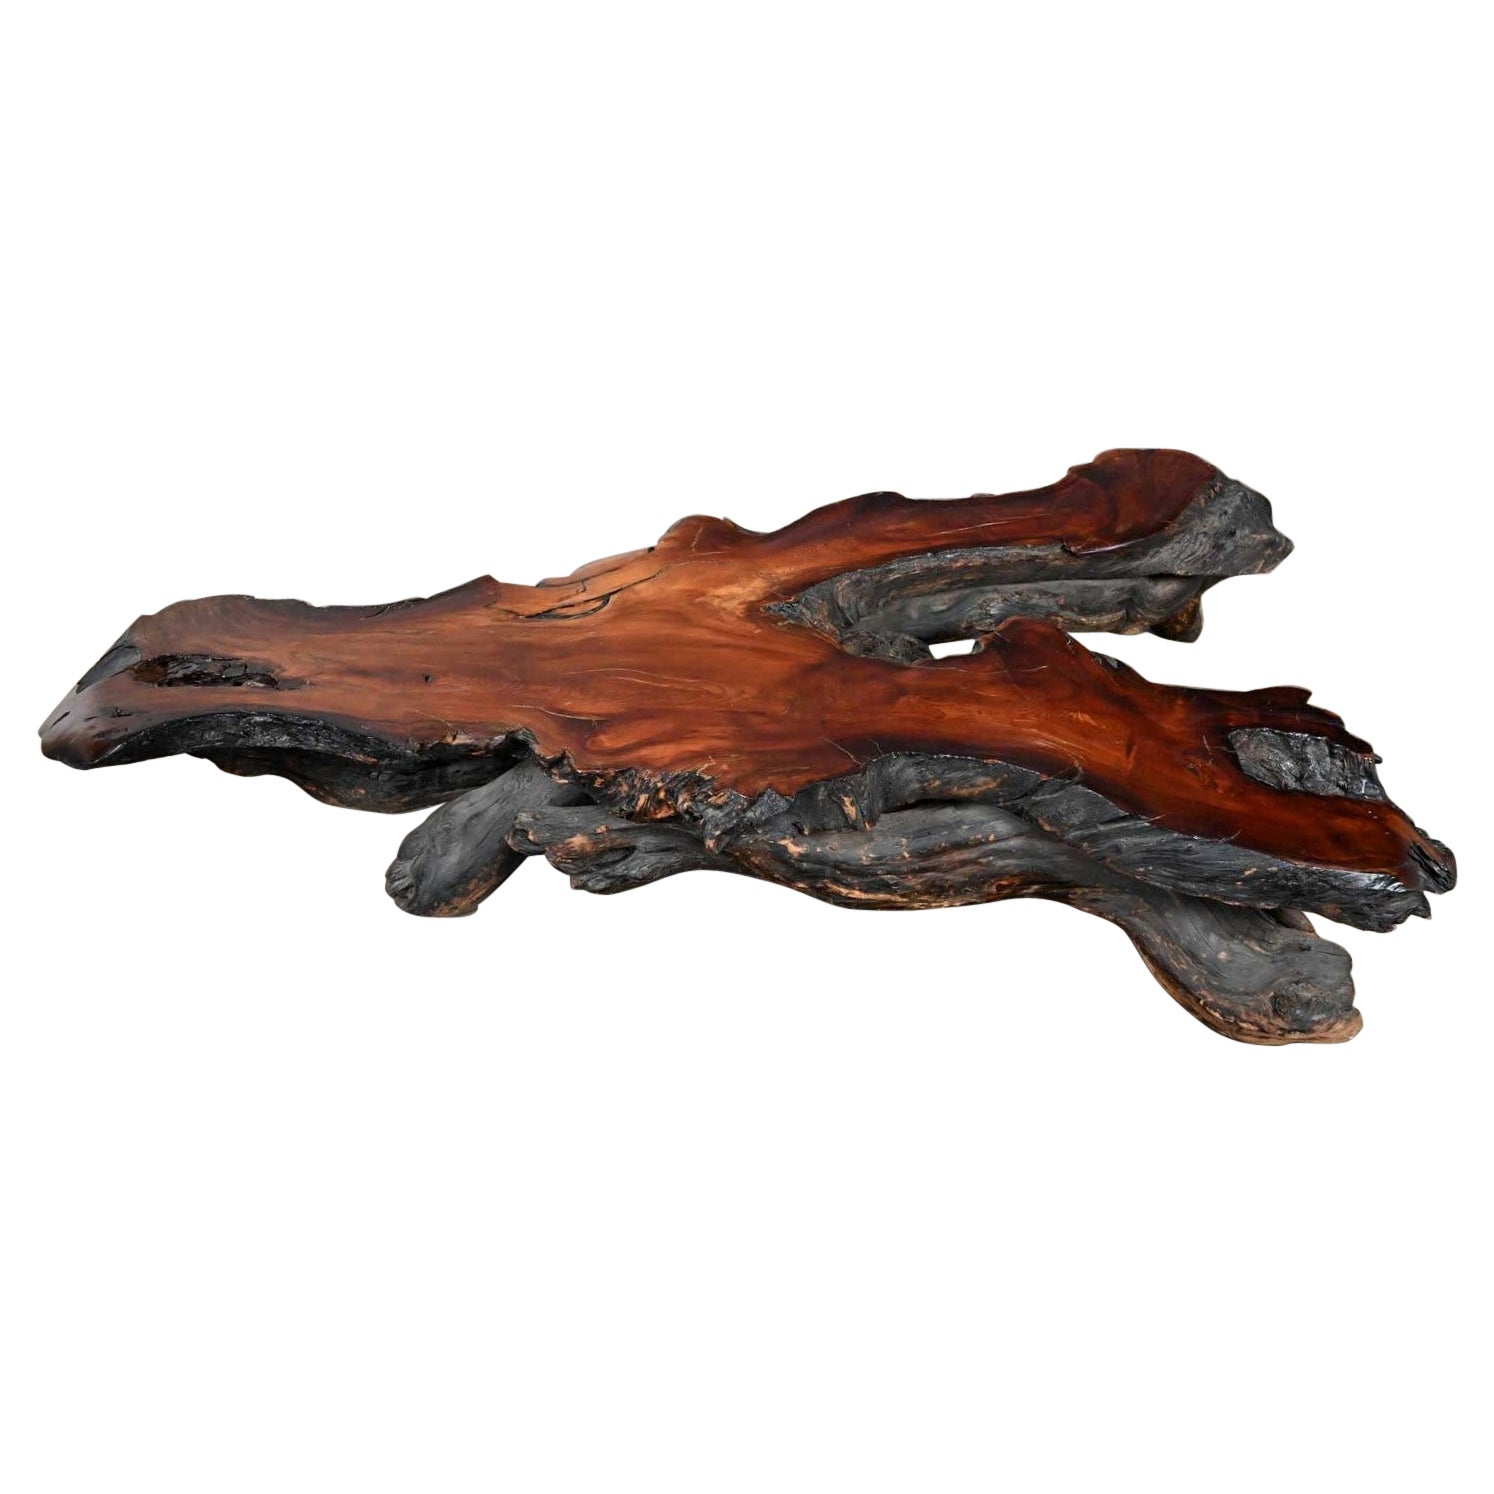 Très grande table basse rustique en bois de ronce de bois rouge, fabriquée à la main, avec des bords francs et des formes libres.